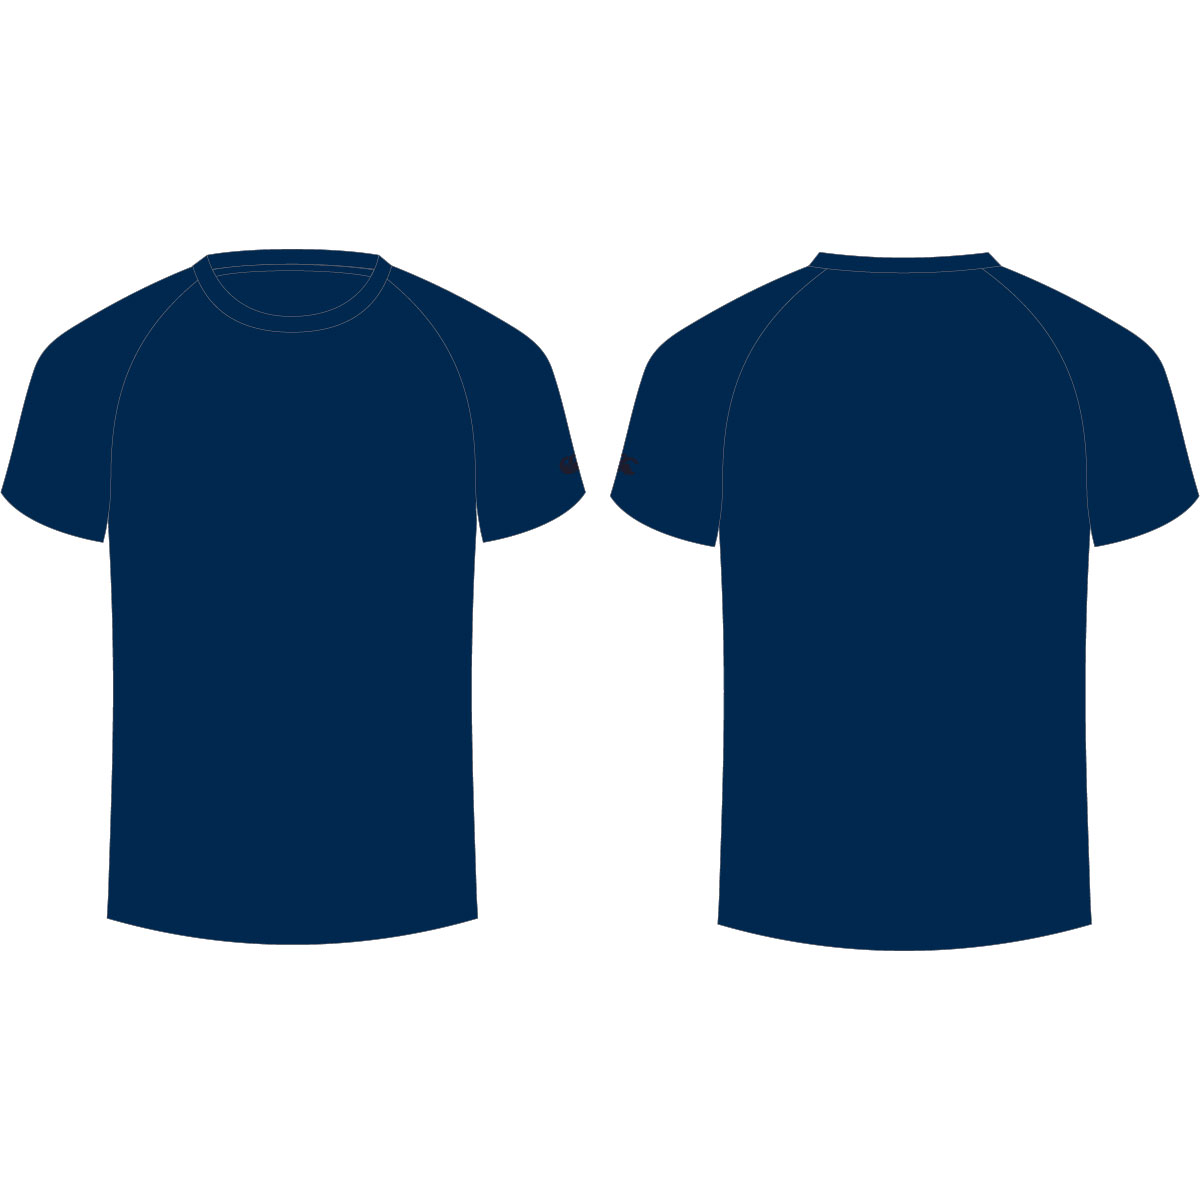 navy-blue-shirt-template